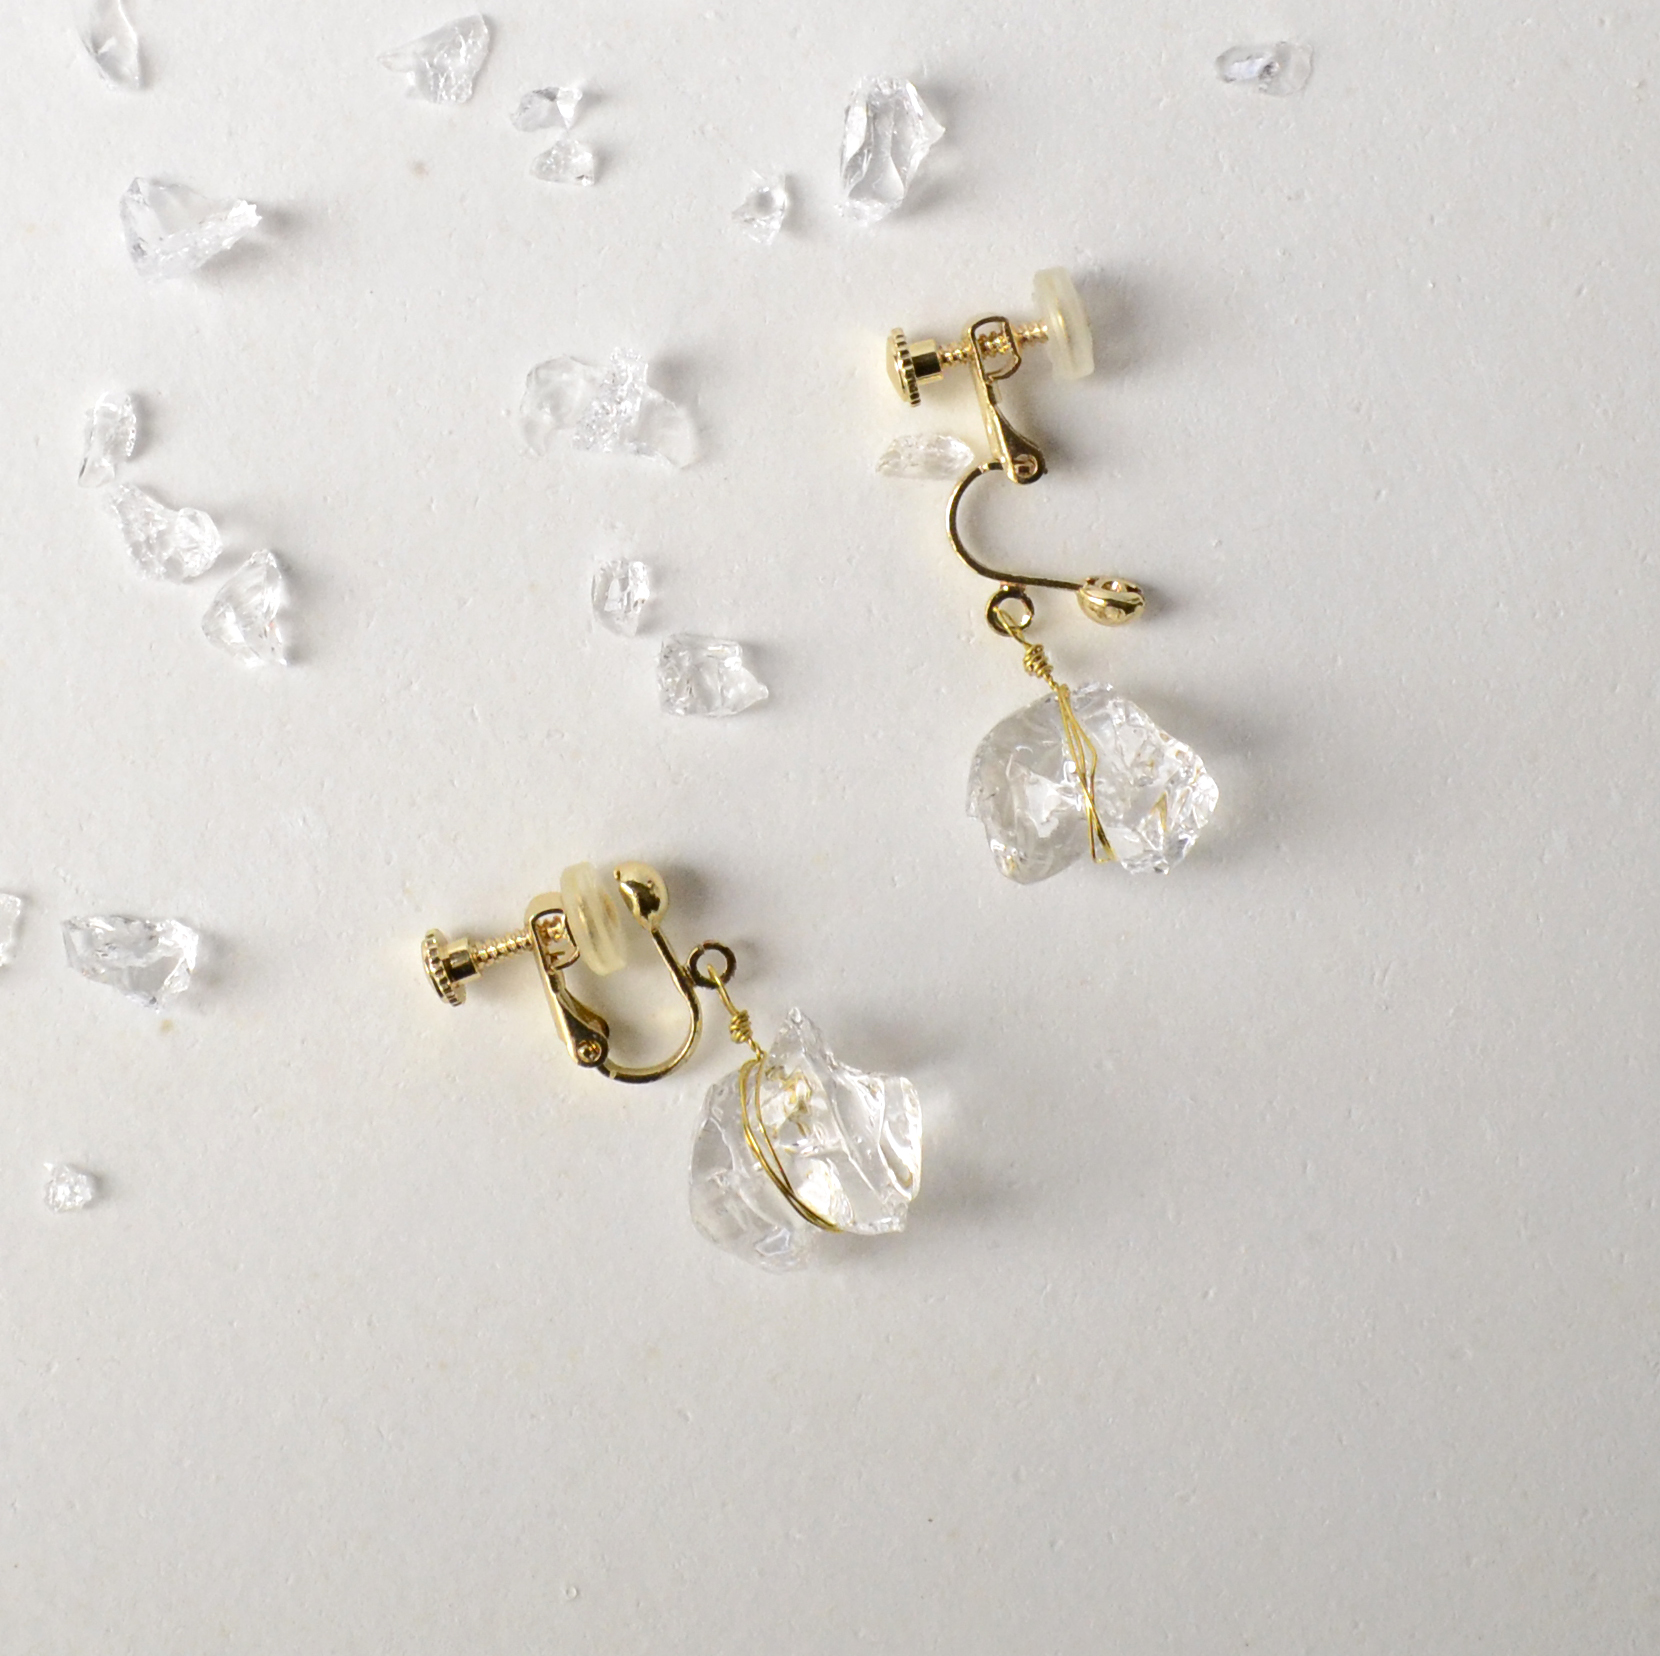 小粒の氷ガラスのピアス イヤリング 金属アレルギー対応金具 Iichi ハンドメイド クラフト作品 手仕事品の通販